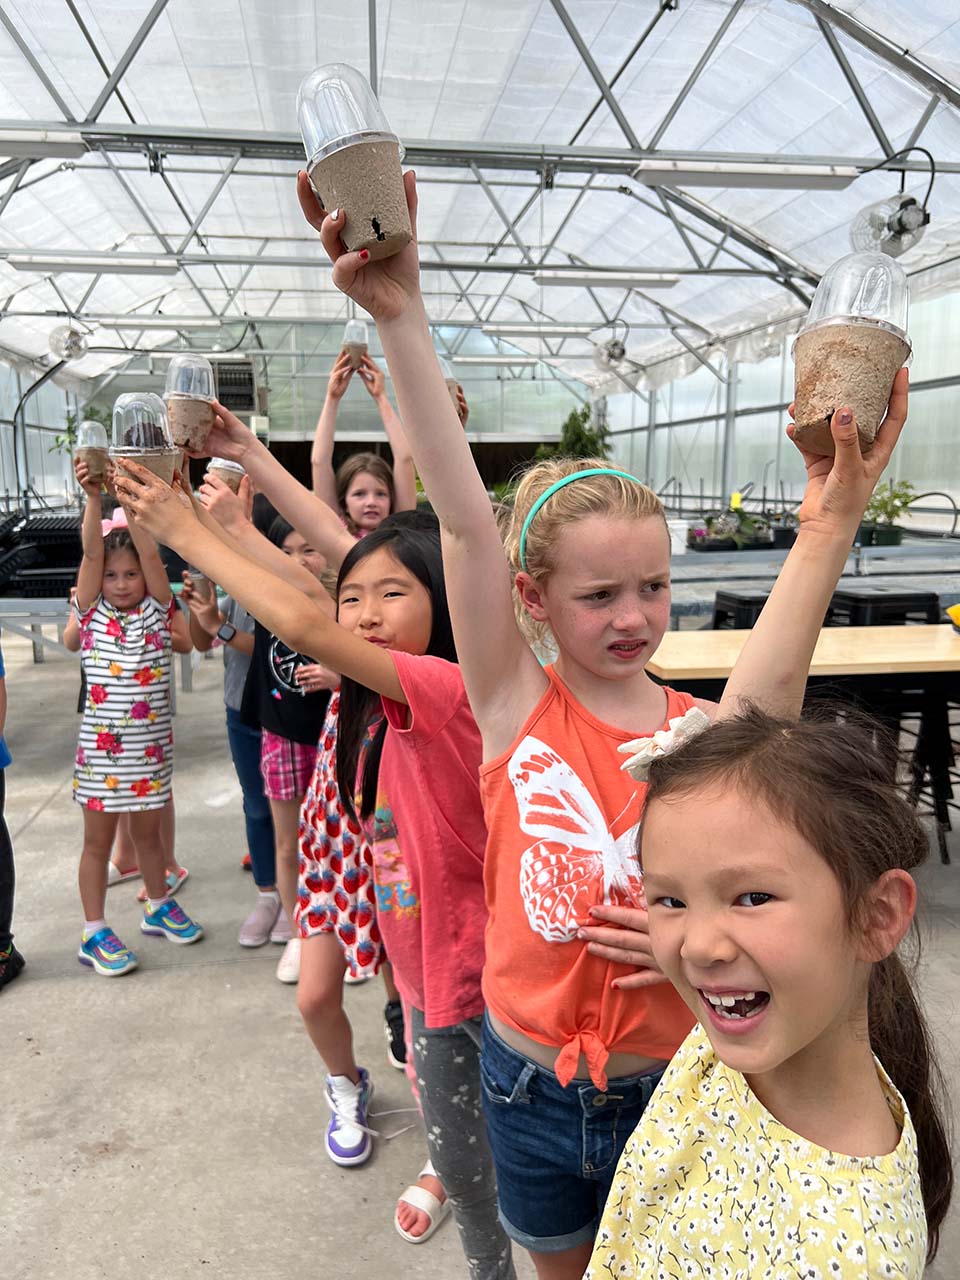 Children holding up cardboard seedling pots